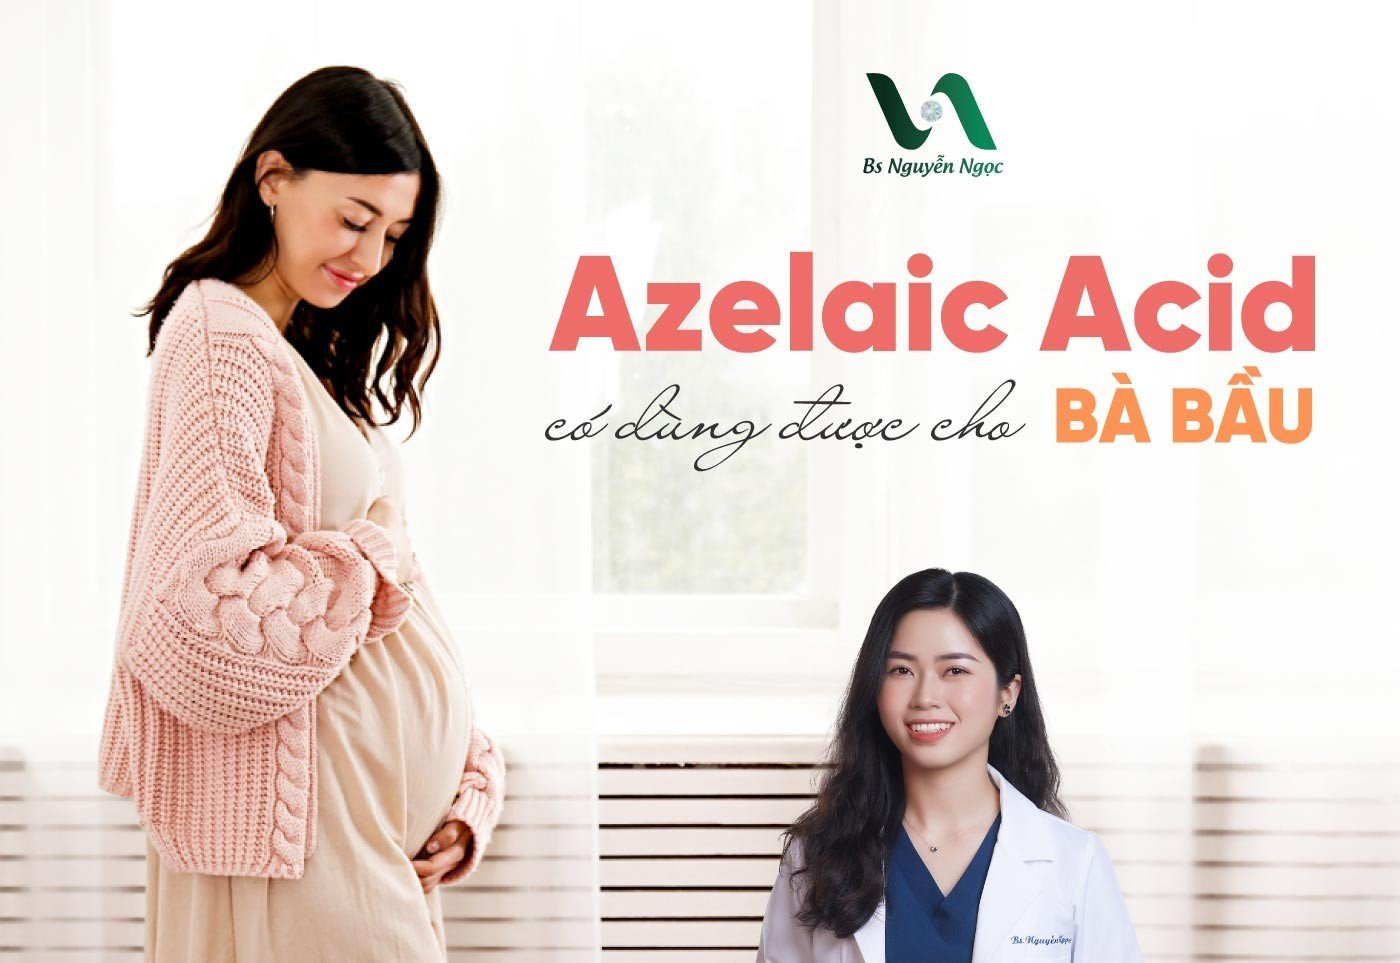 Azelaic Acid có dùng được cho bà bầu?